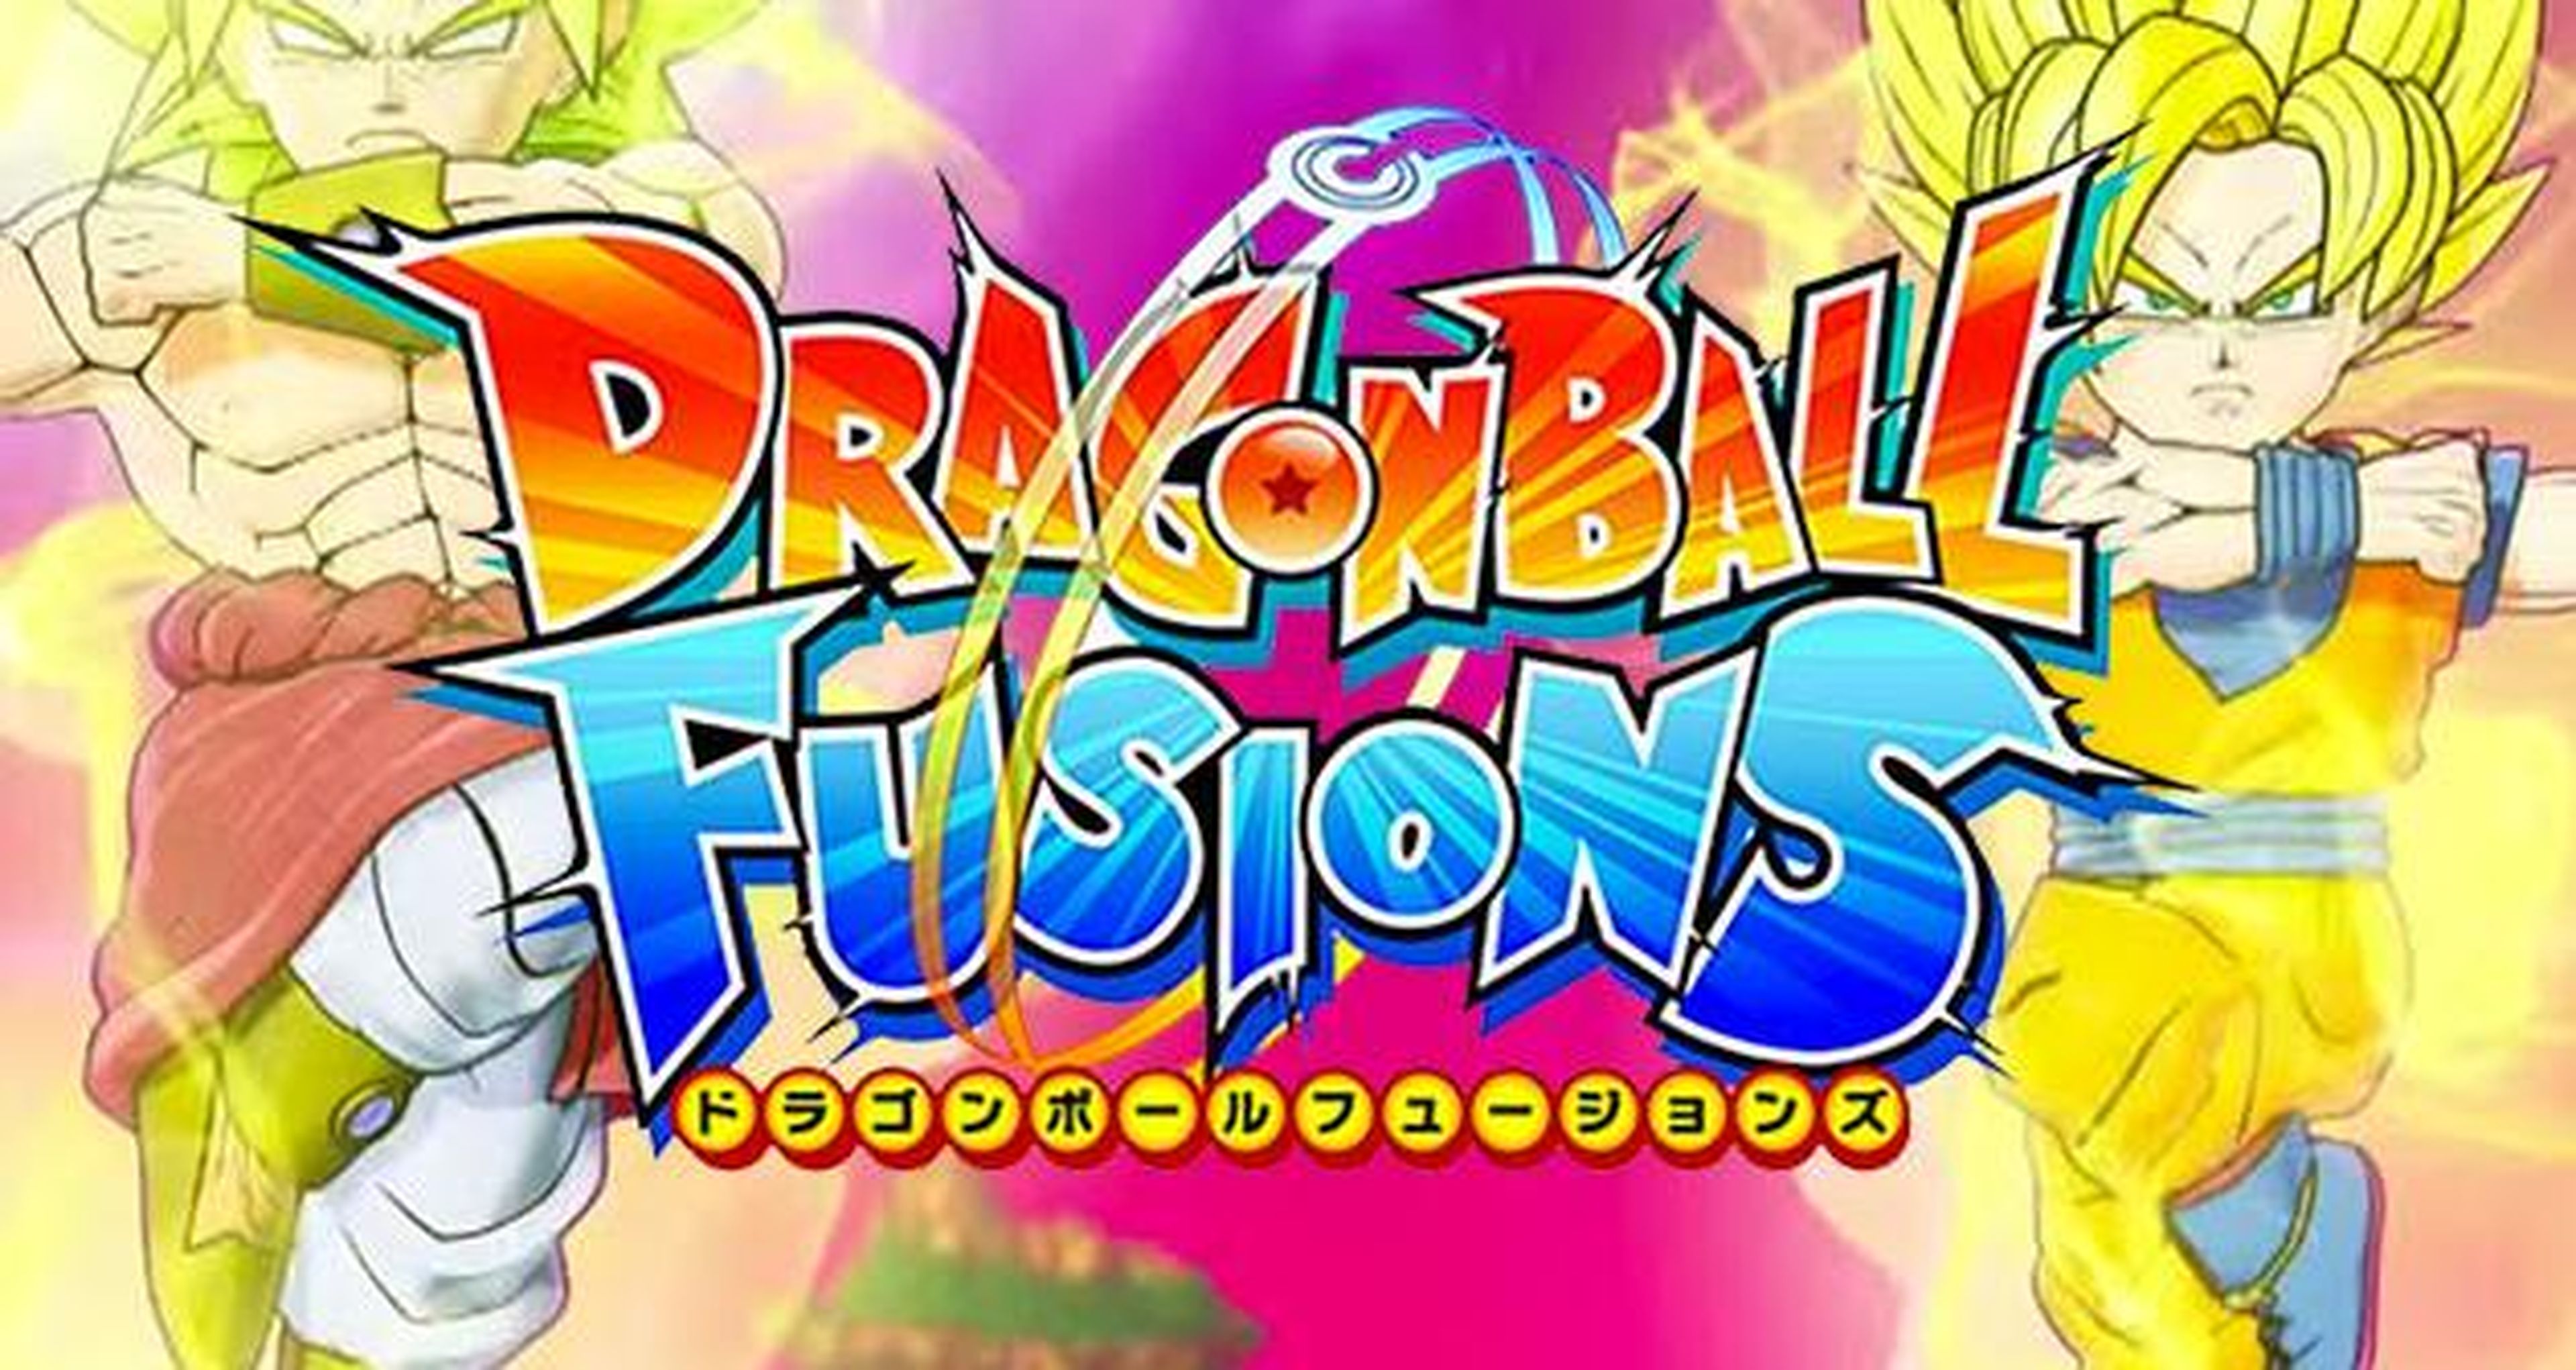 Dragon Ball Fusions - Pack de lujo con la edición coleccionista